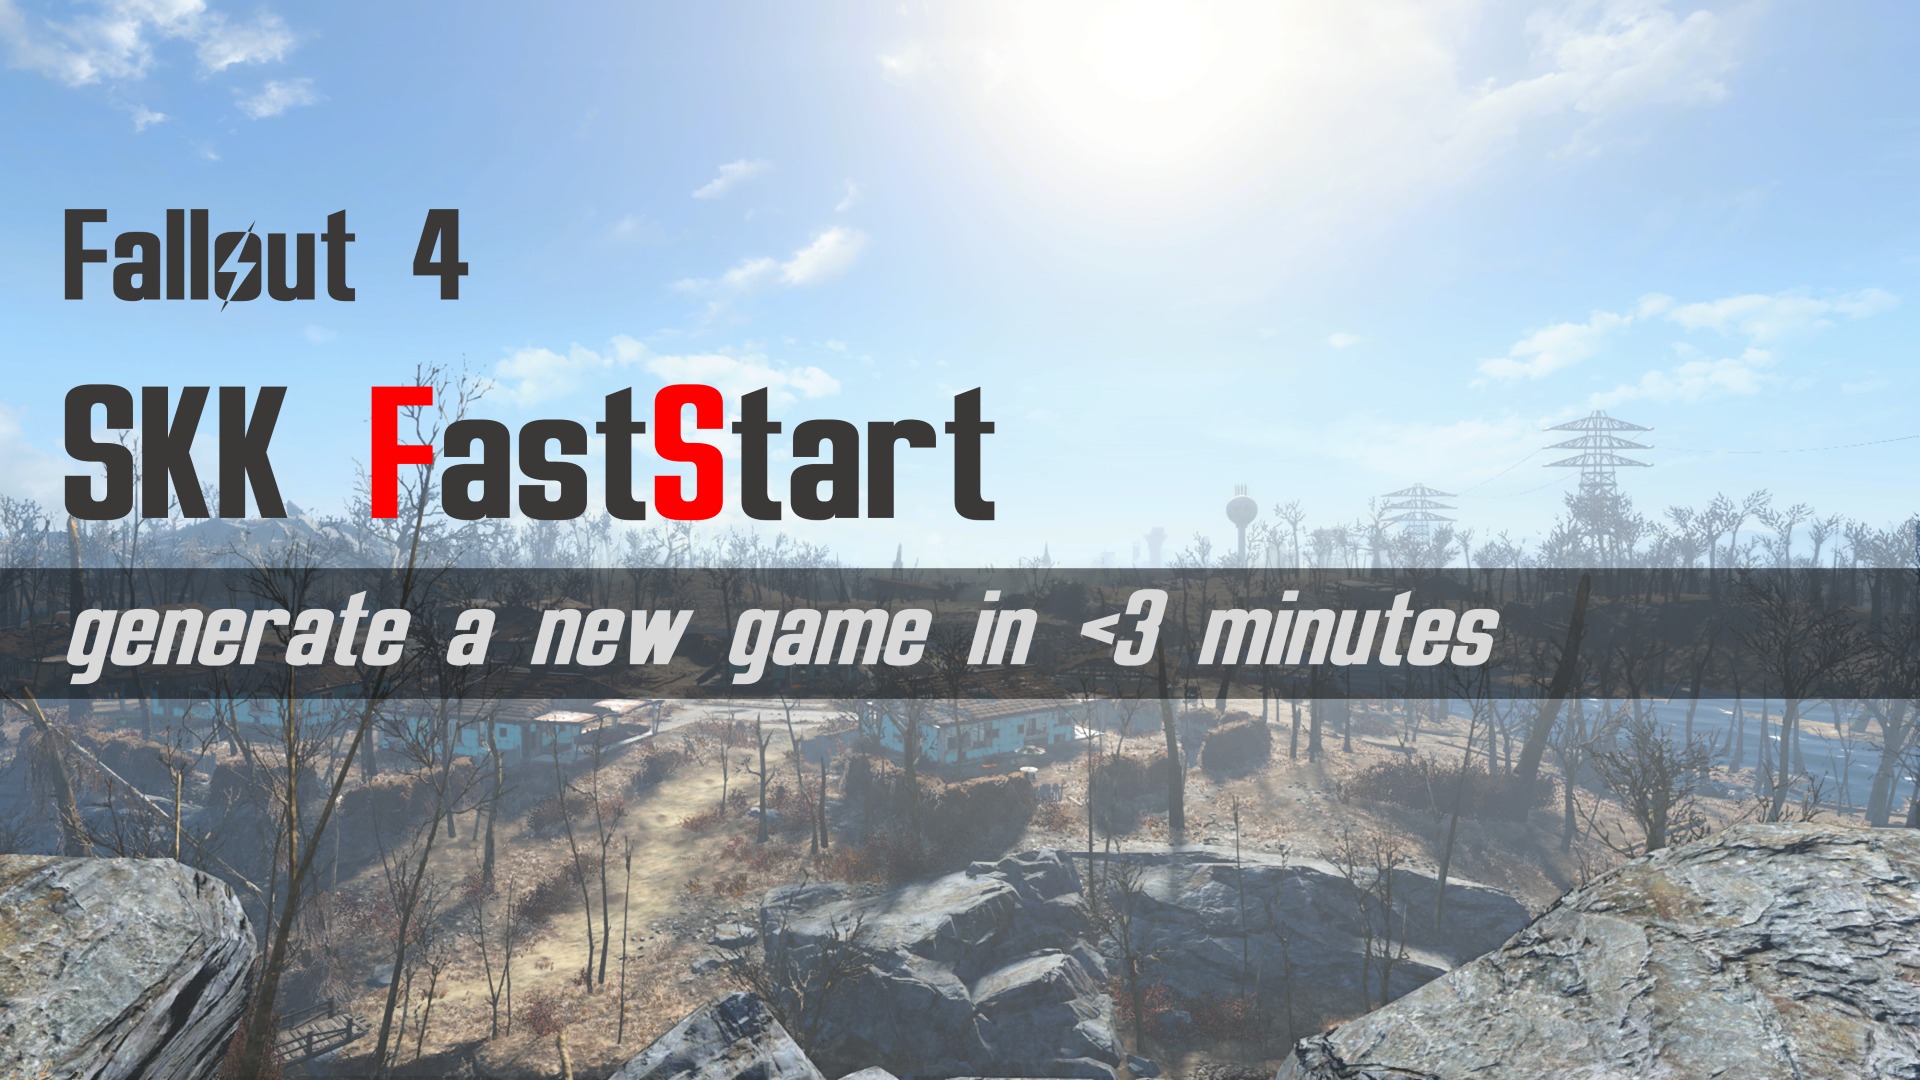 Skk Fast Start New Game ゲームシステム変更 Fallout4 Mod データベース Mod紹介 まとめサイト